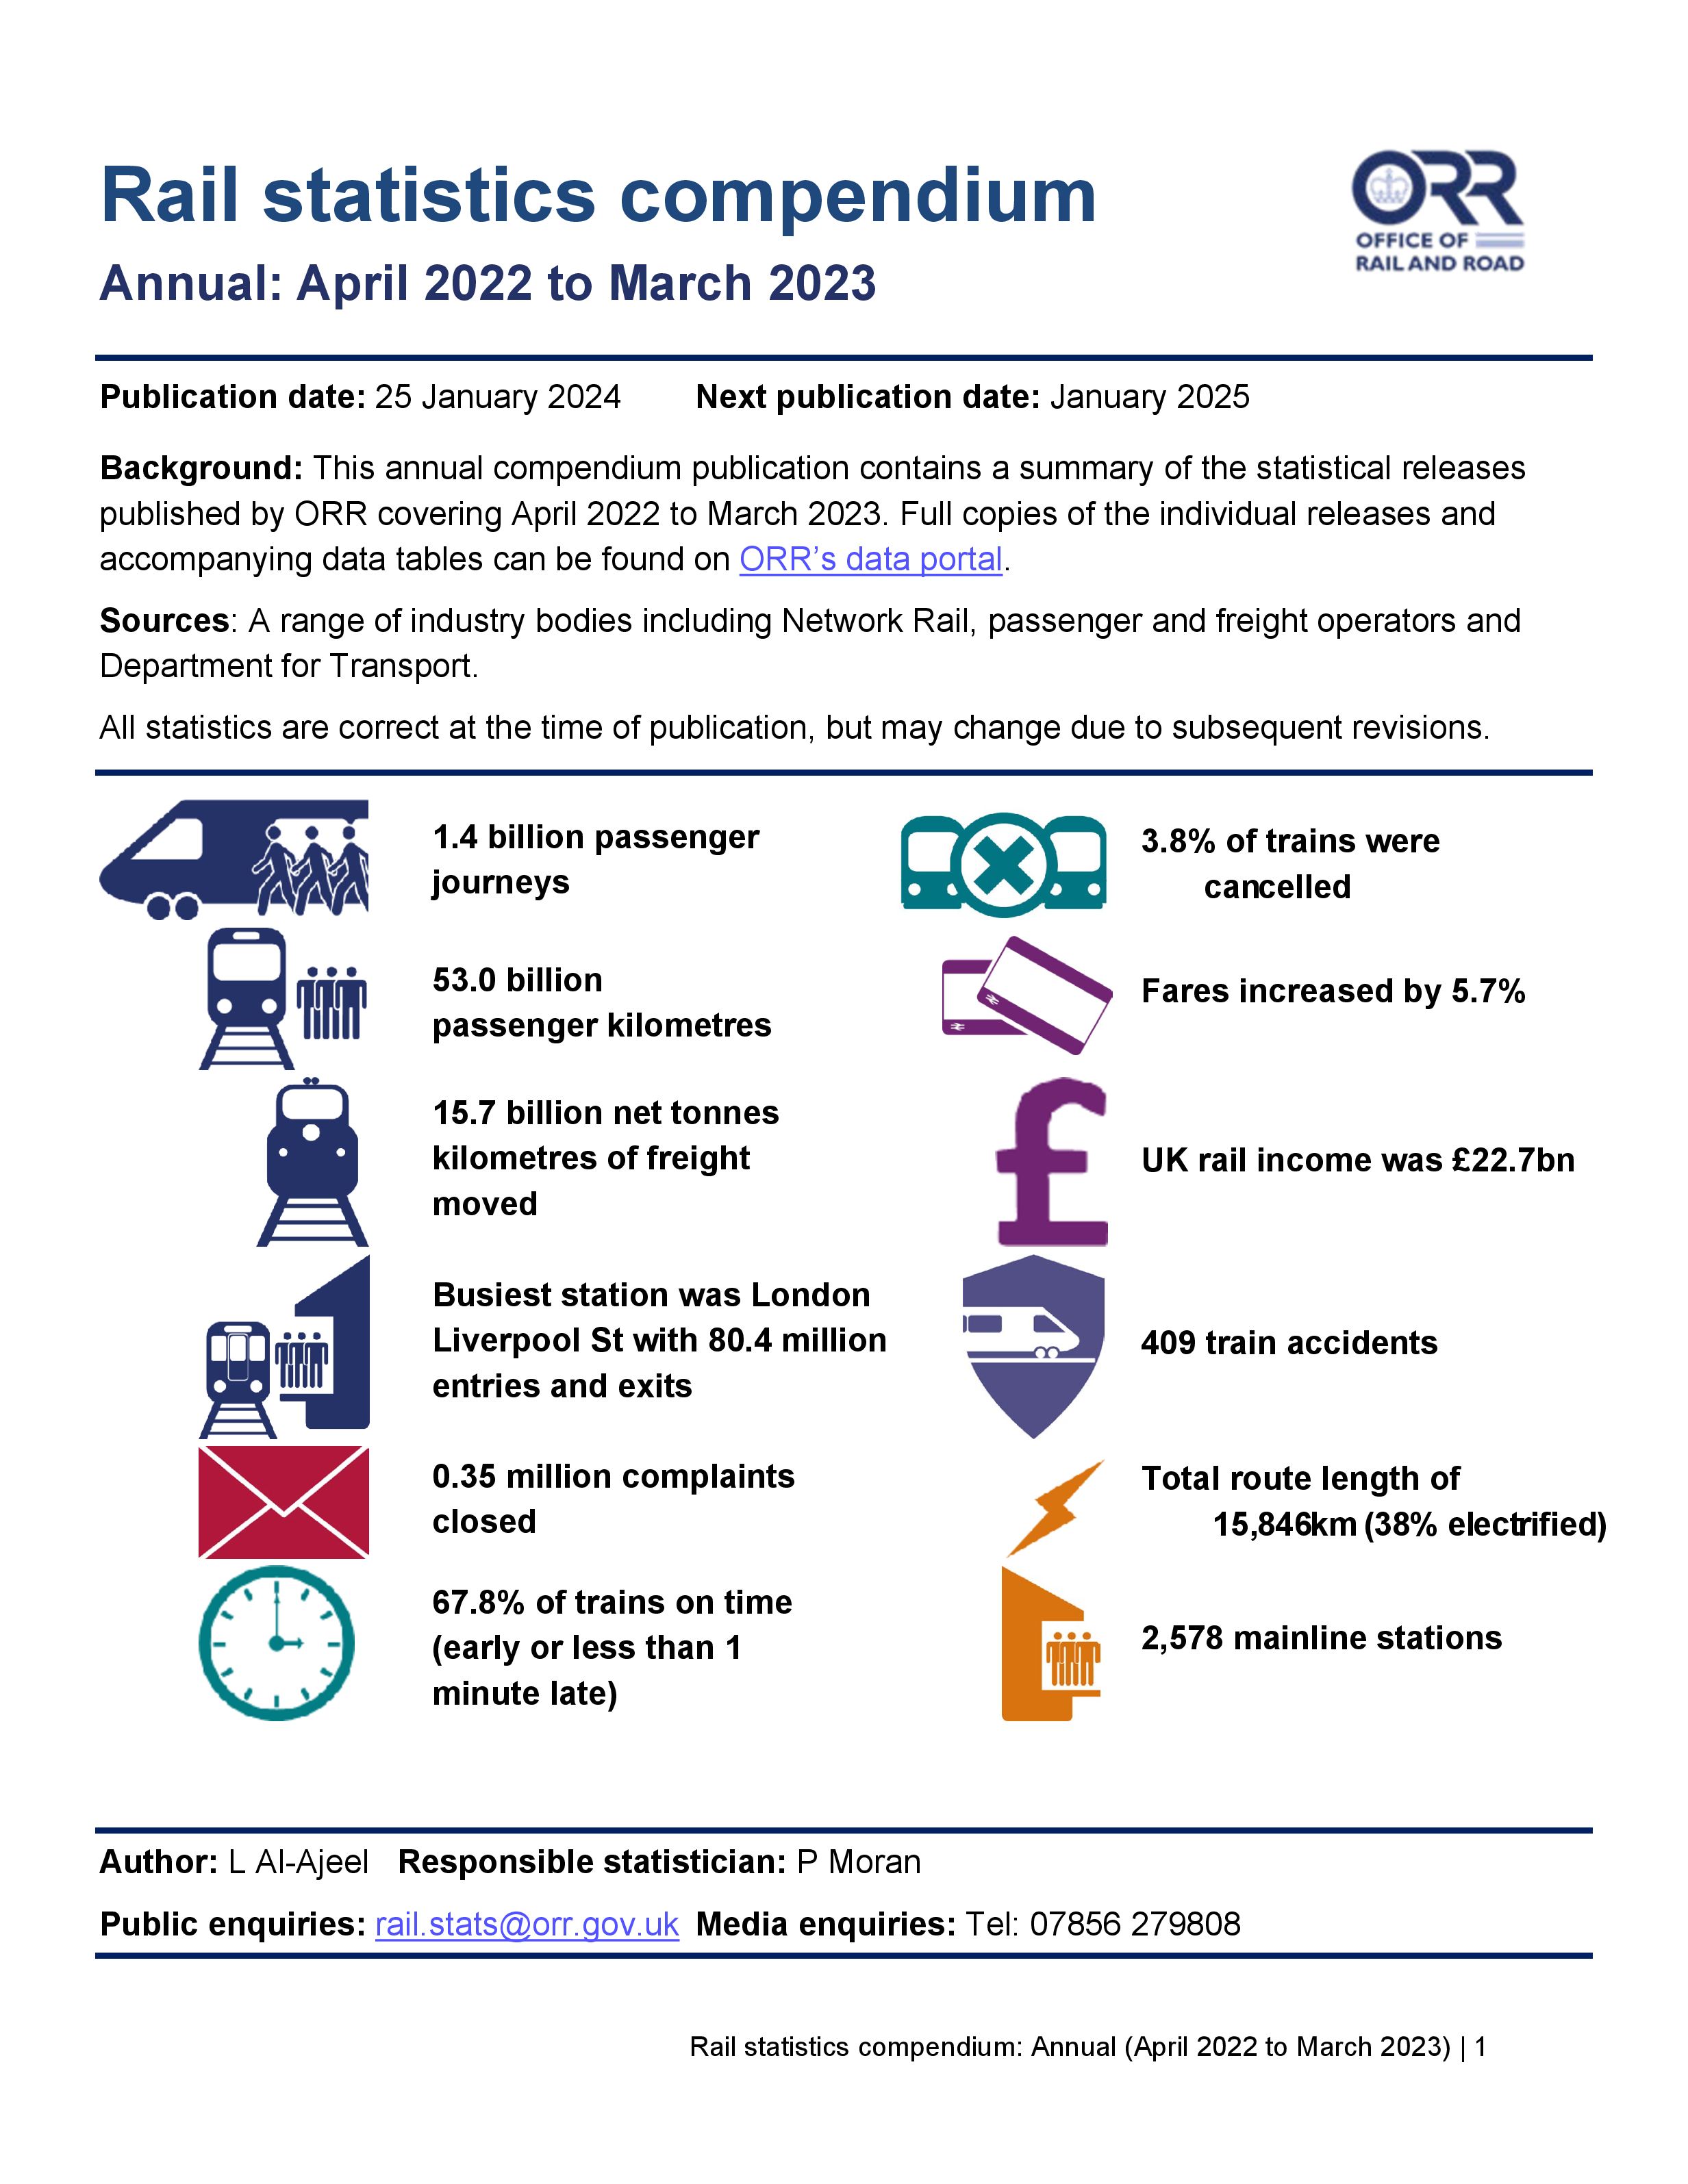 Rail statistics compendium, April 2022 to March 2023